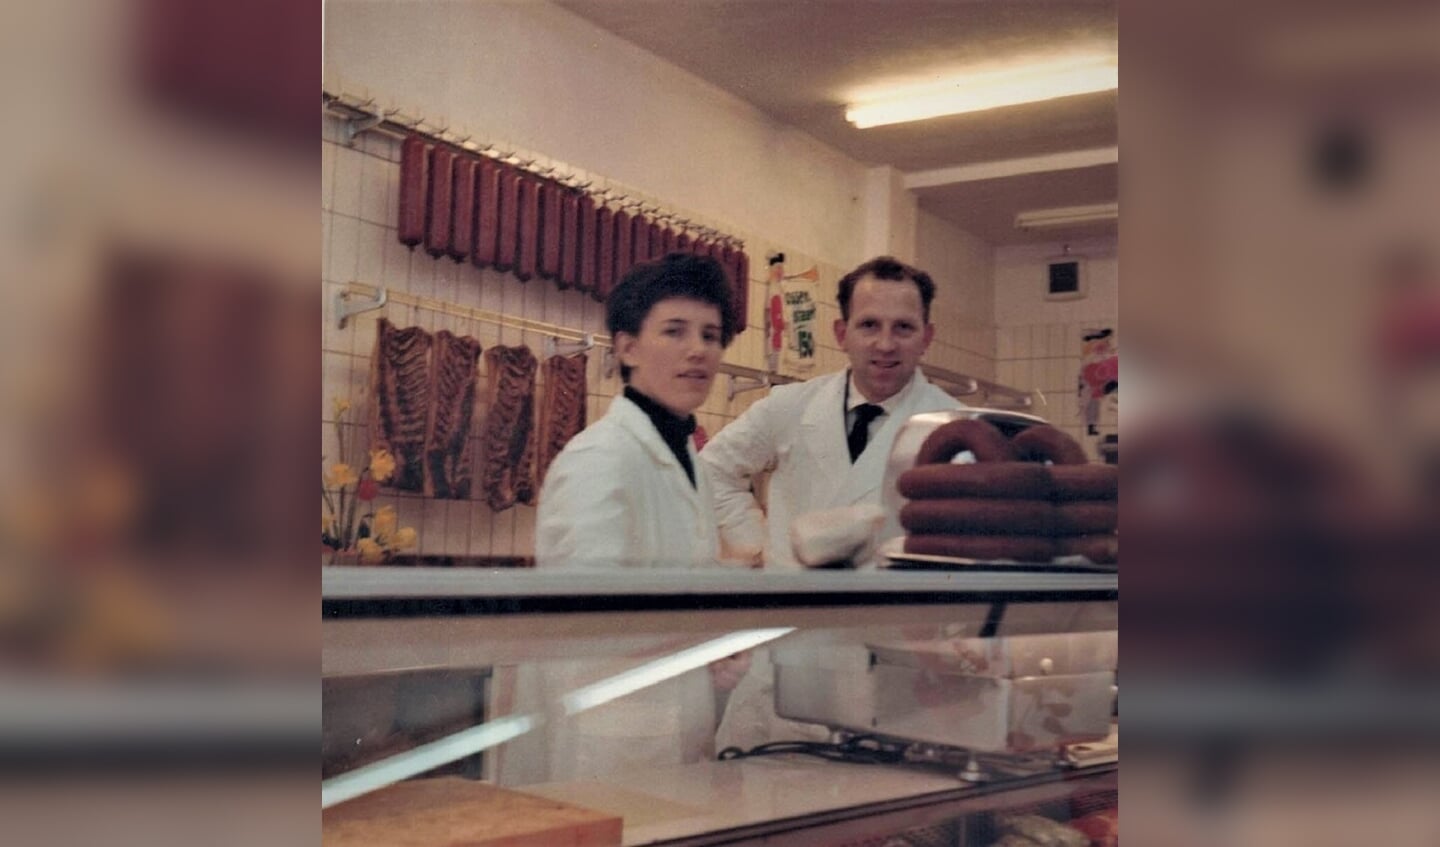 Ans en Jan achter de toonbank rond de jaren 60 uit de vorige eeuw.